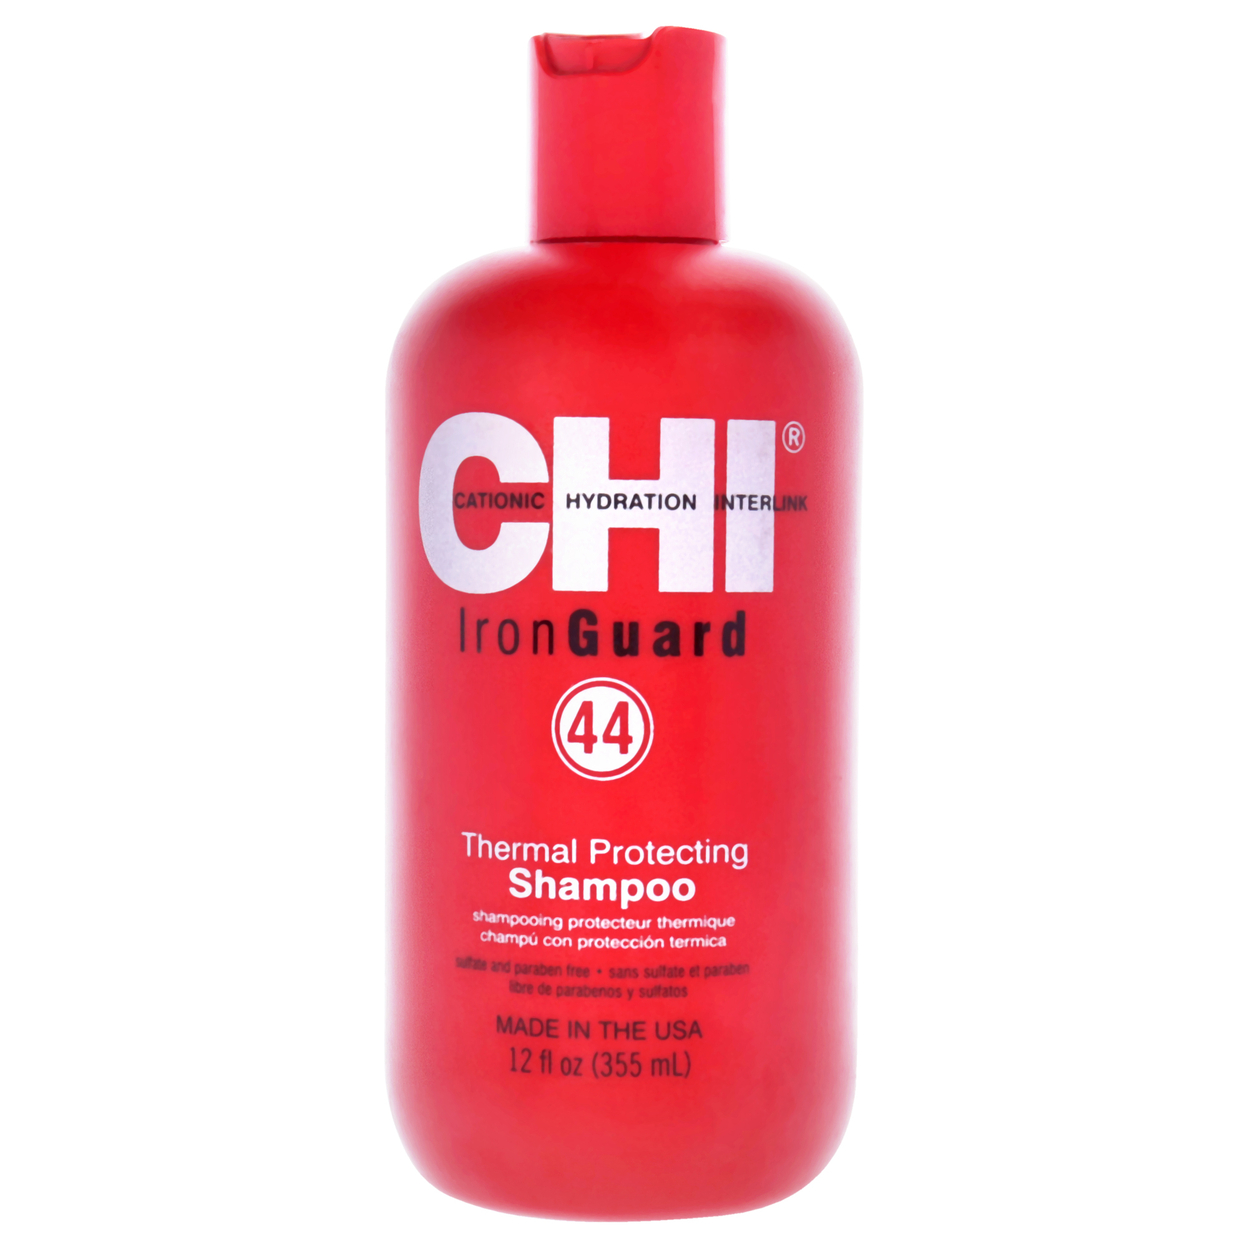 CHI 44 Iron Guard Thermal Protecting Shampoo 12 Oz